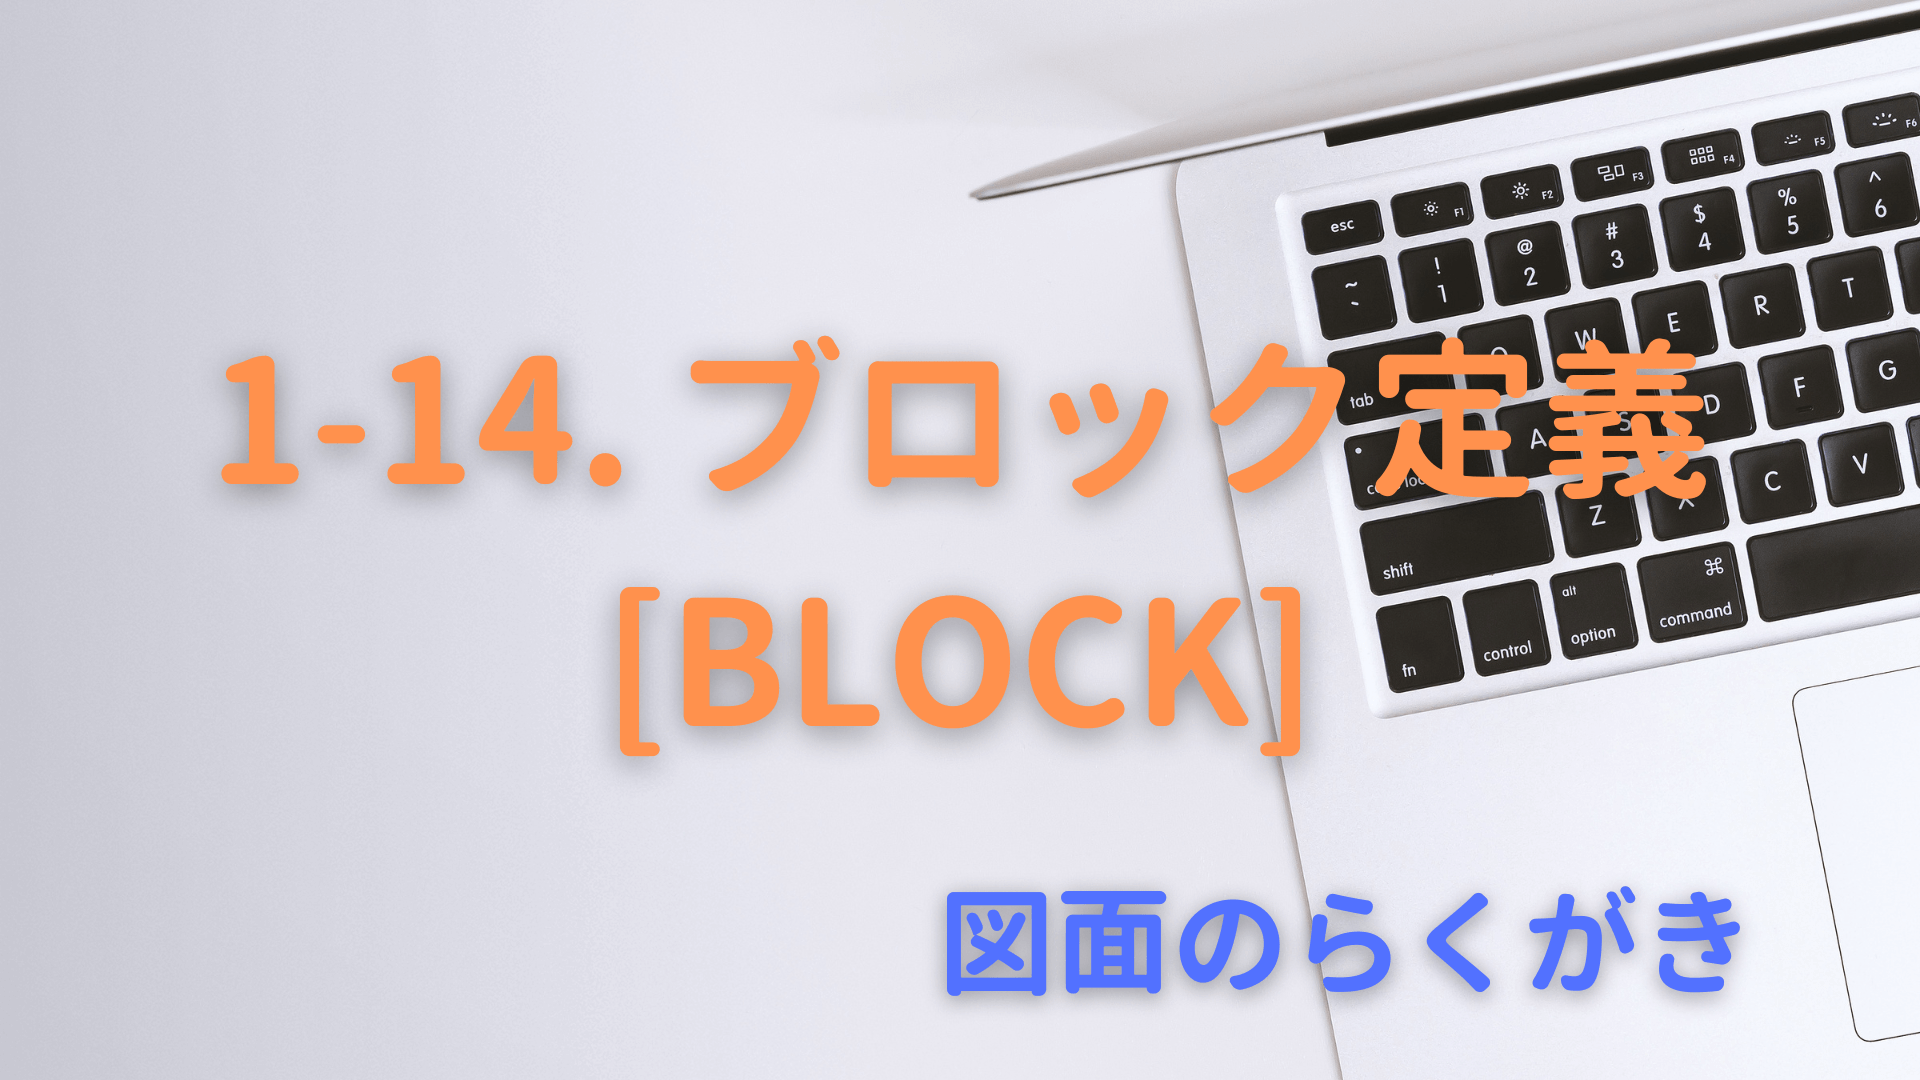 1-14. ブロック定義[BLOCK]